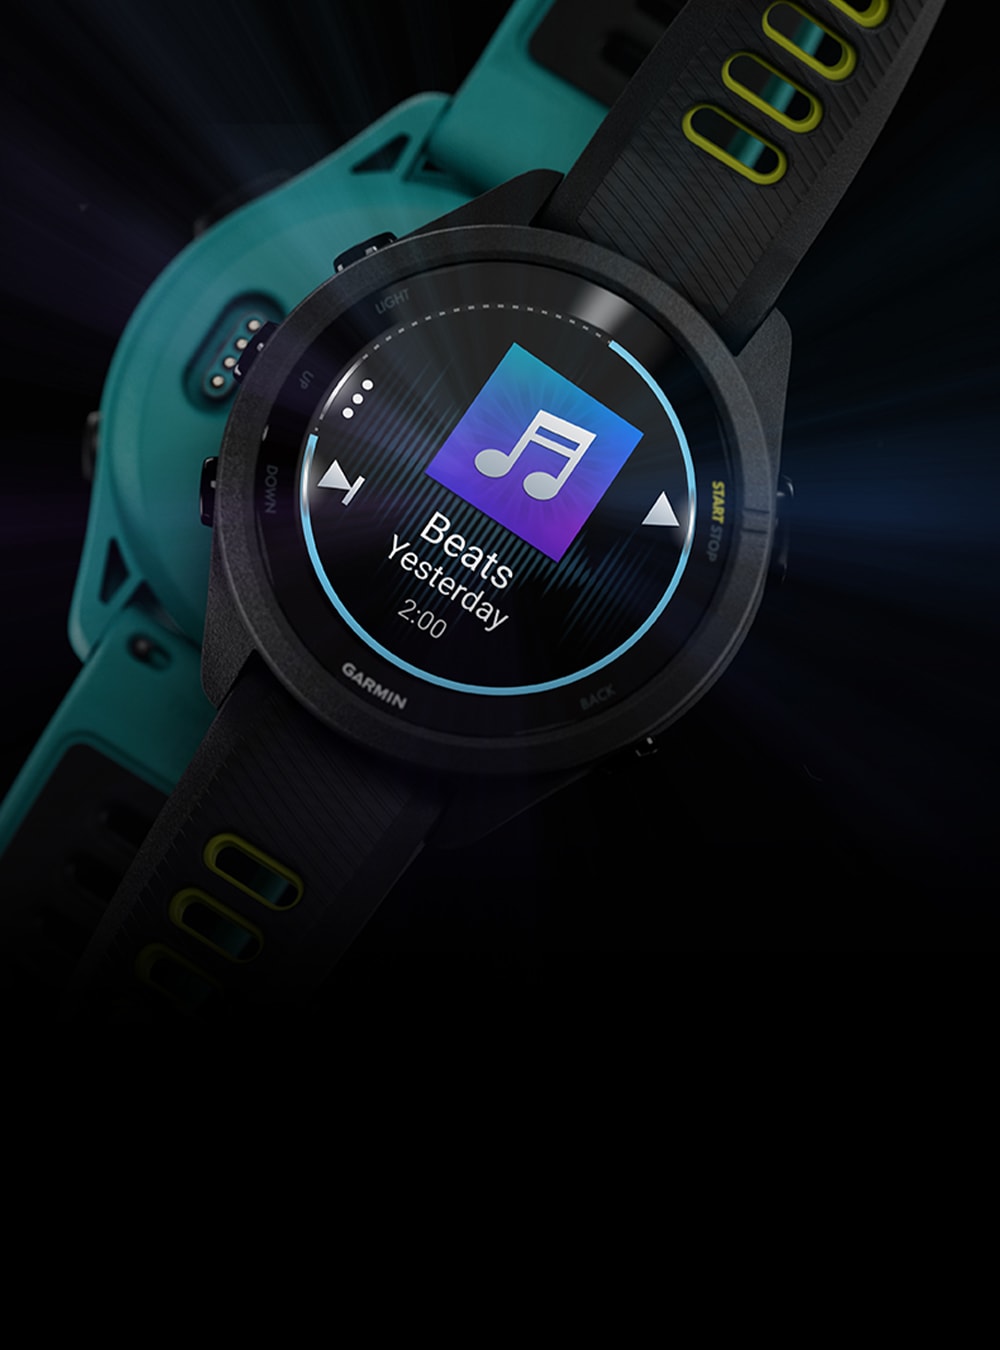  PlayBetter Garmin Forerunner 265 (Aqua/Negro) Reloj inteligente  GPS para correr, Pantalla AMOLED brillante, entrenamiento avanzado,  información de recuperación